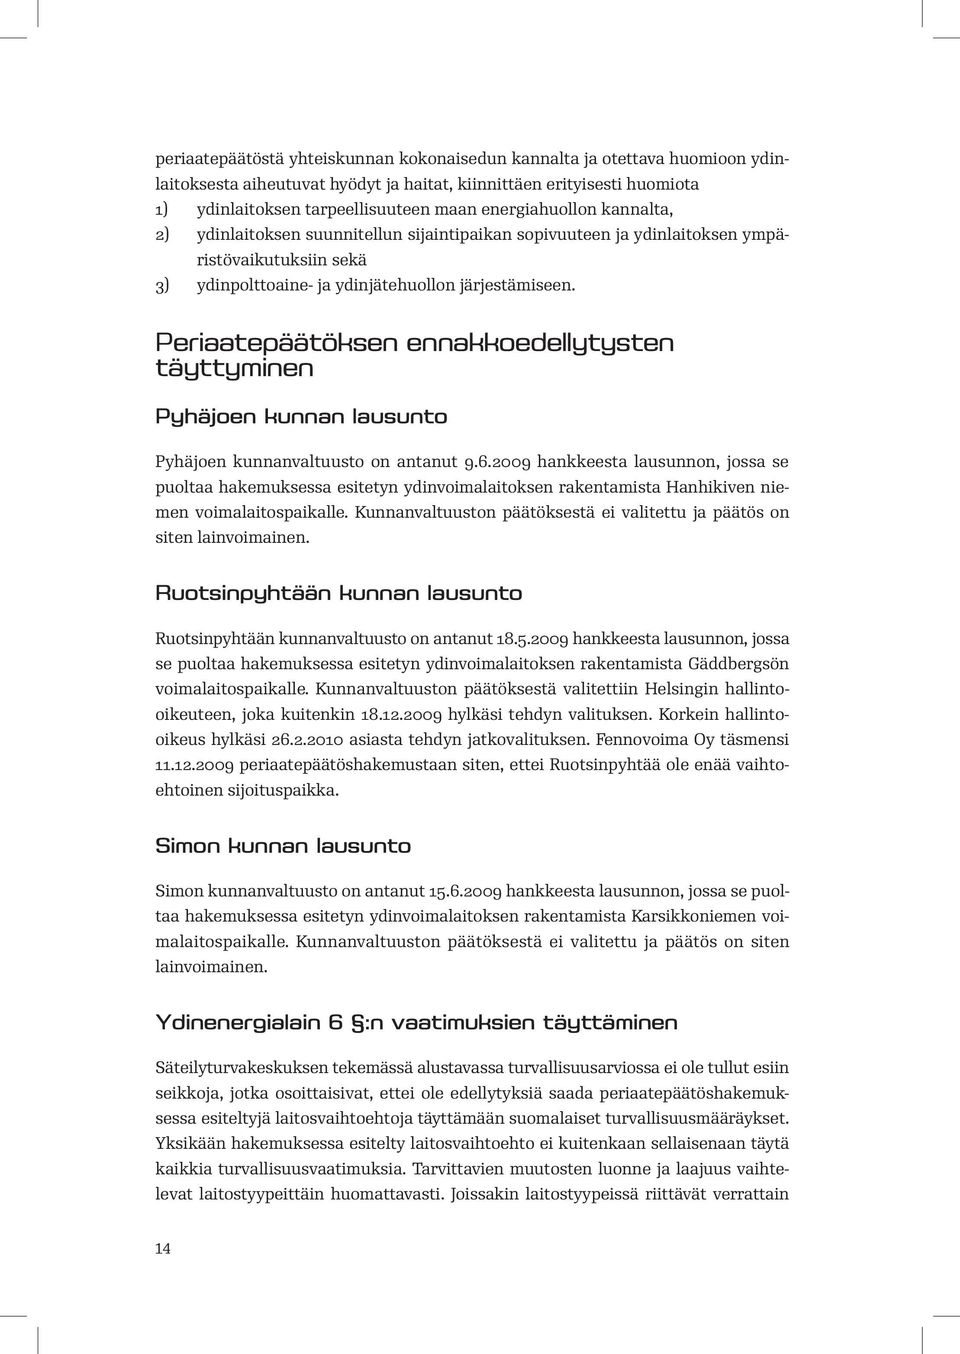 Periaatepäätöksen ennakkoedellytysten täyttyminen Pyhäjoen kunnan lausunto Pyhäjoen kunnanvaltuusto on antanut 9.6.